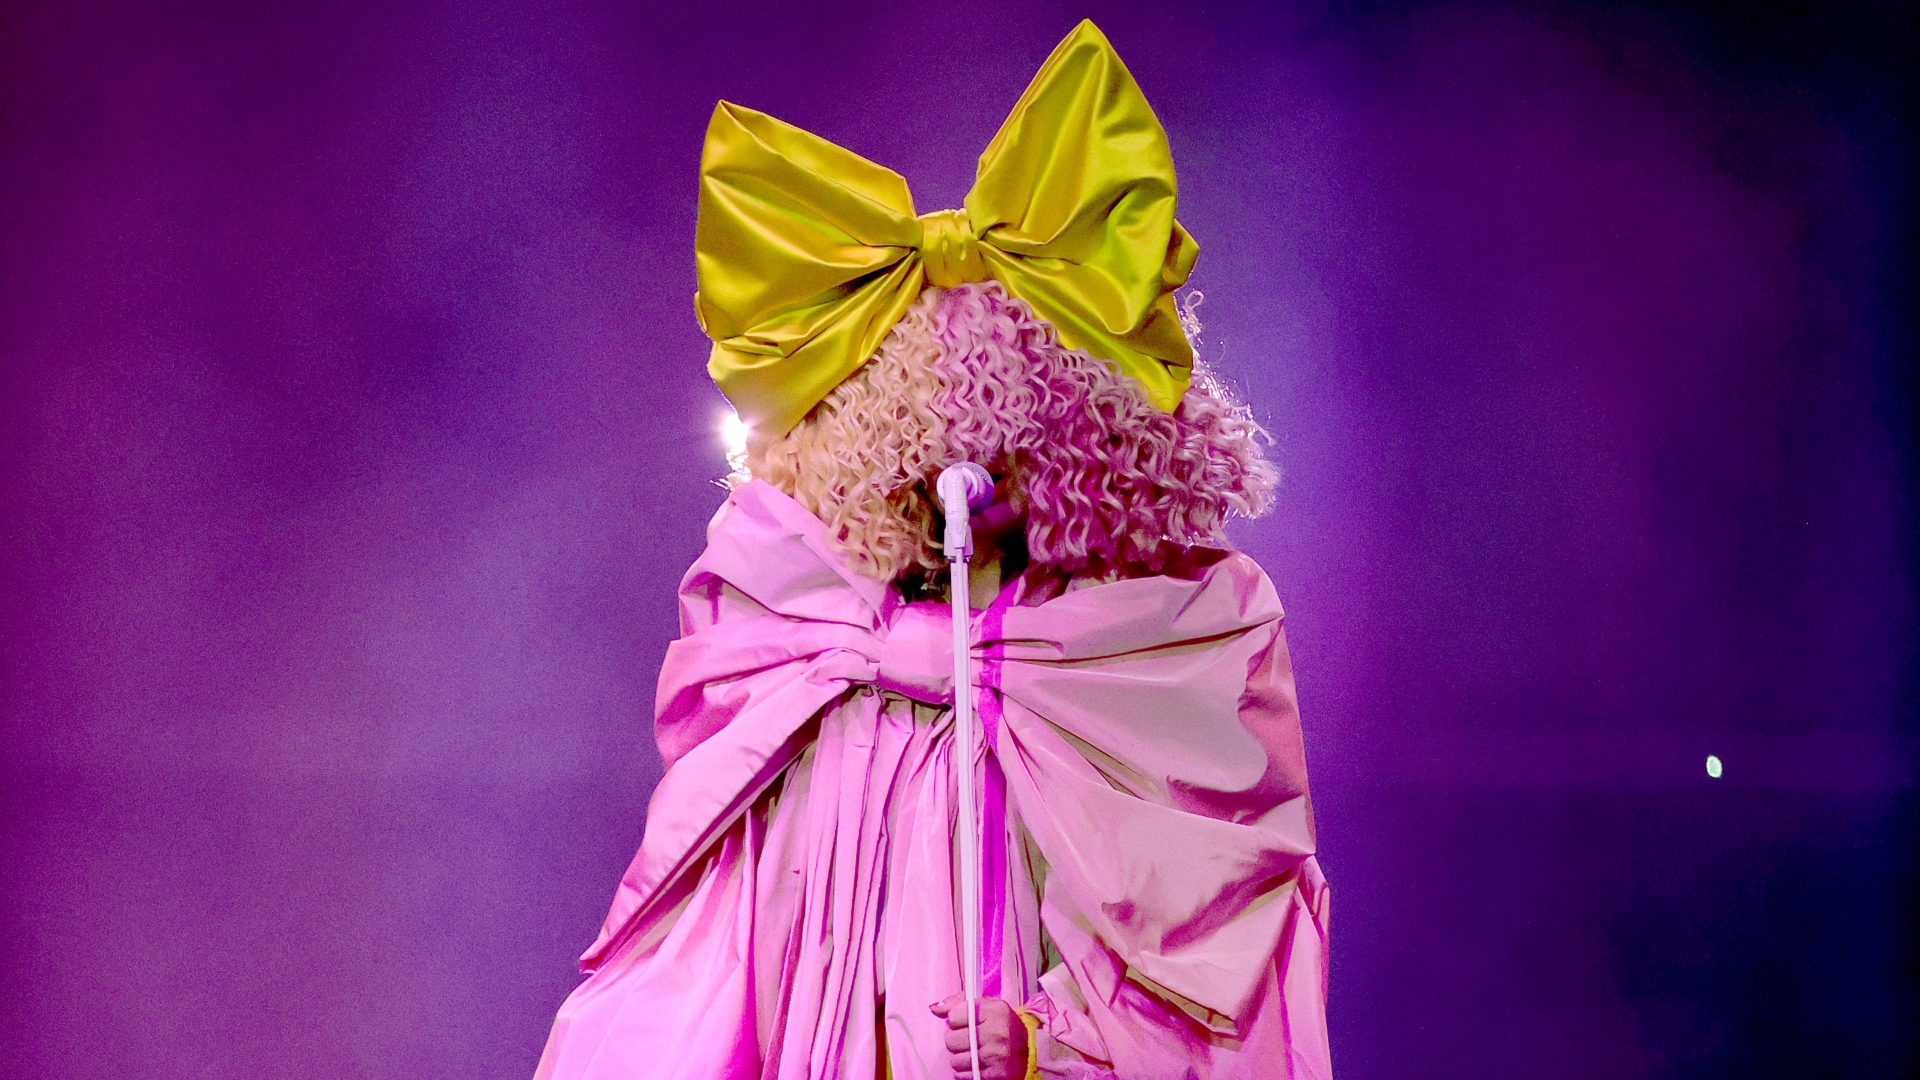 La cantante Sia fue diagnosticada con un trastorno del espectro autista